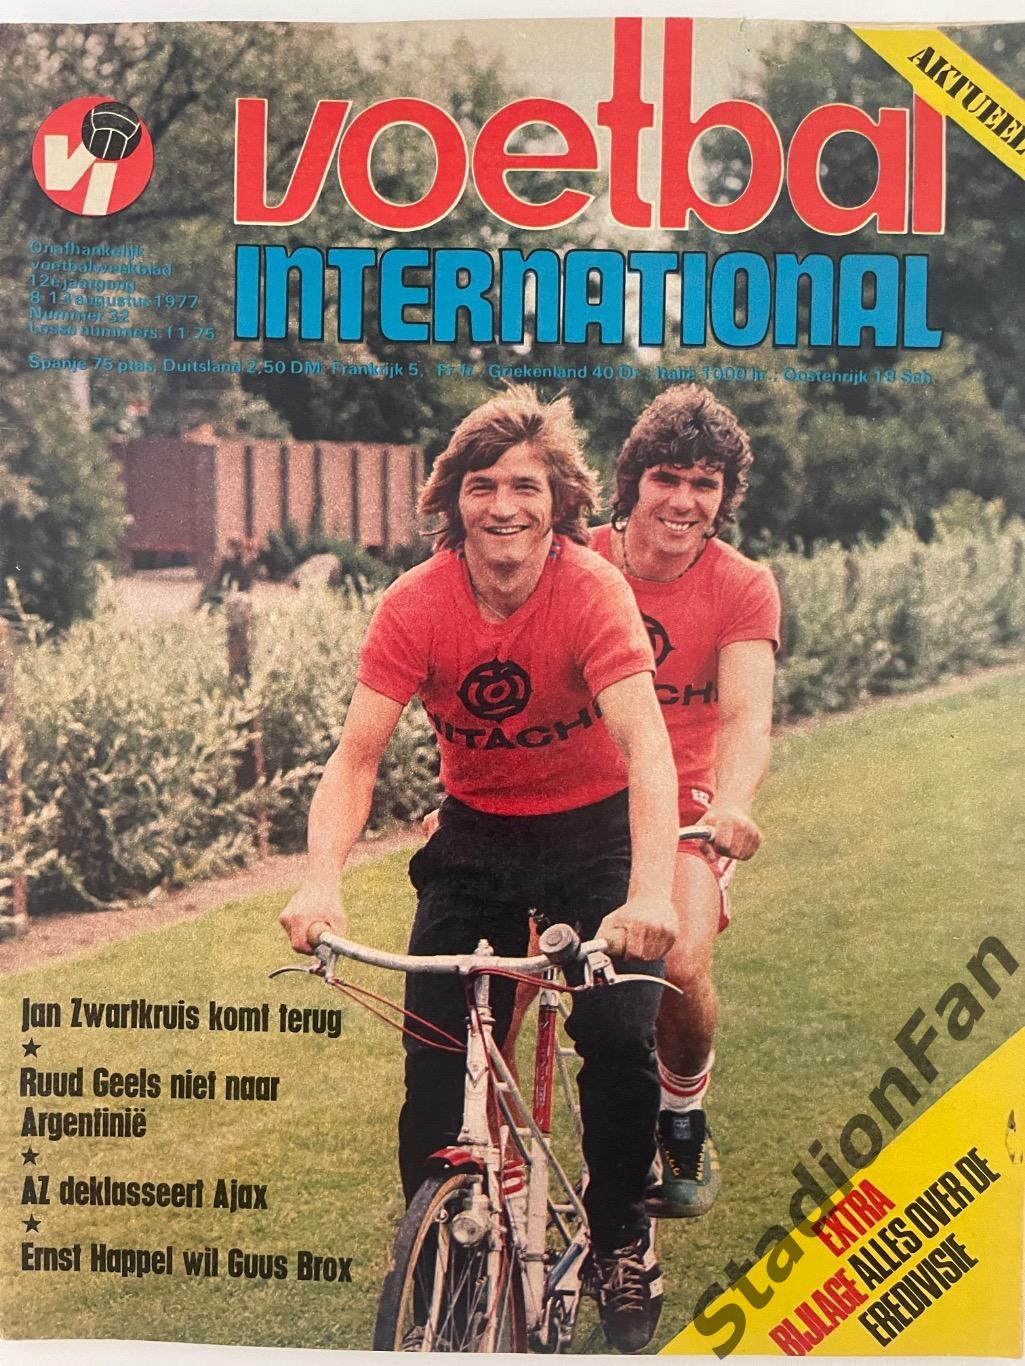 Журнал Voetbal nr.32 - 1977 год.